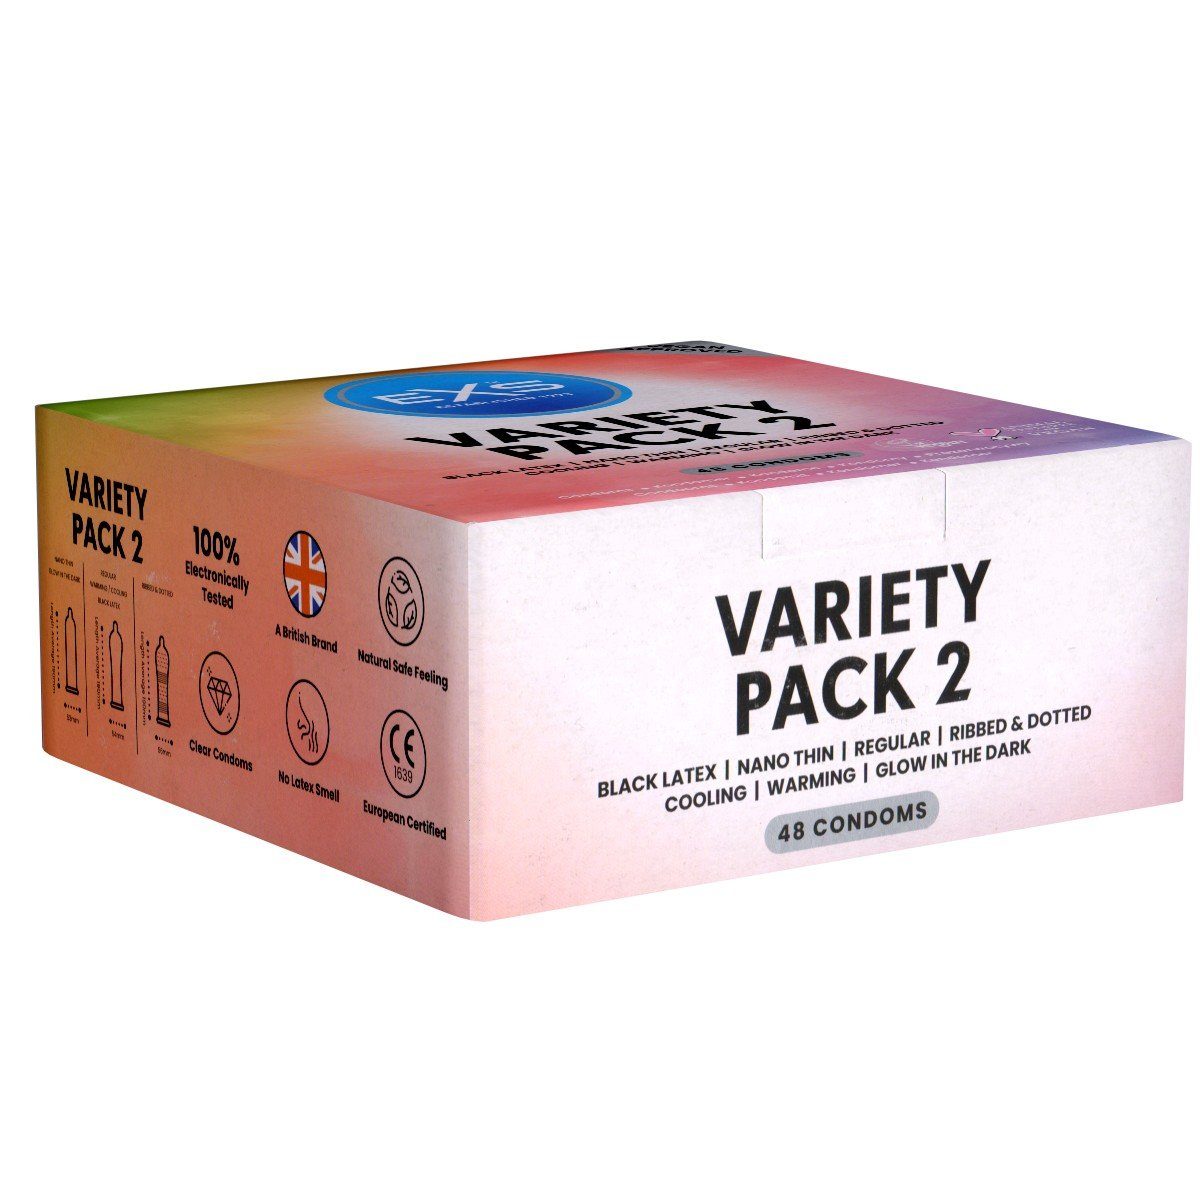 St., 48 EXS Variety sieben Kondome mit, Sorten verschiedene Genießen zum und 2 gemischte - Packung Probieren Kondome Pack